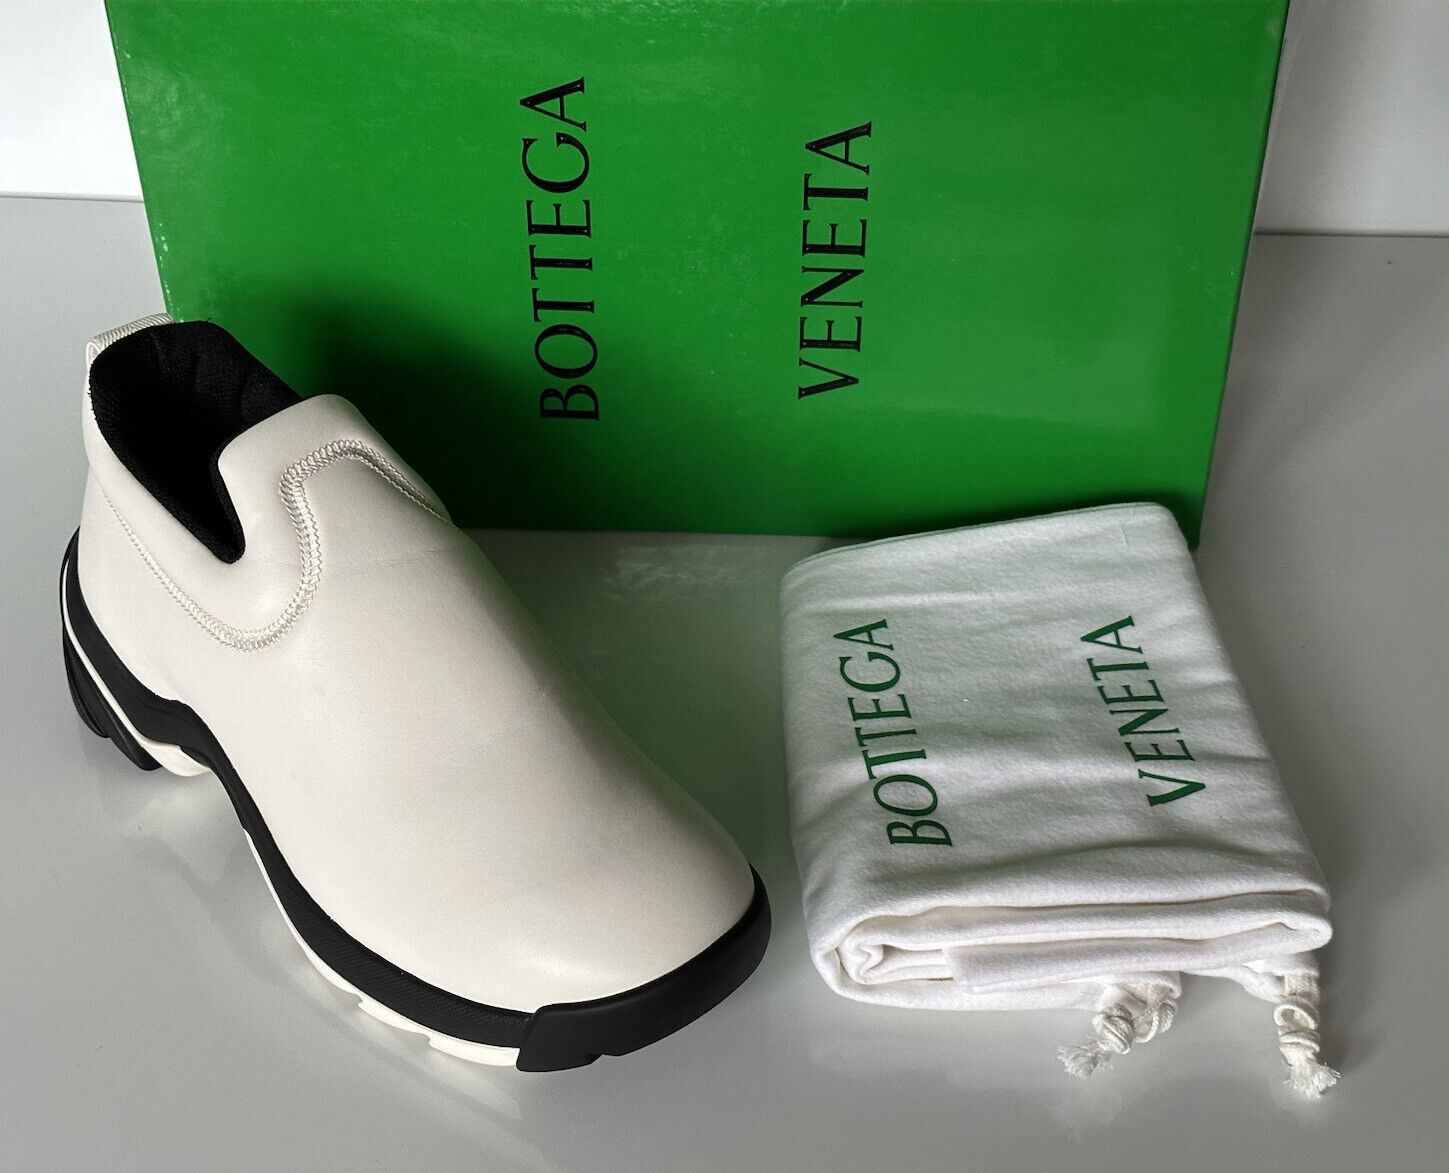 NIB 890 $ Bottega Veneta Herren-Sneakers aus neutralem Lagoon-Nappaleder 9 US 667069 